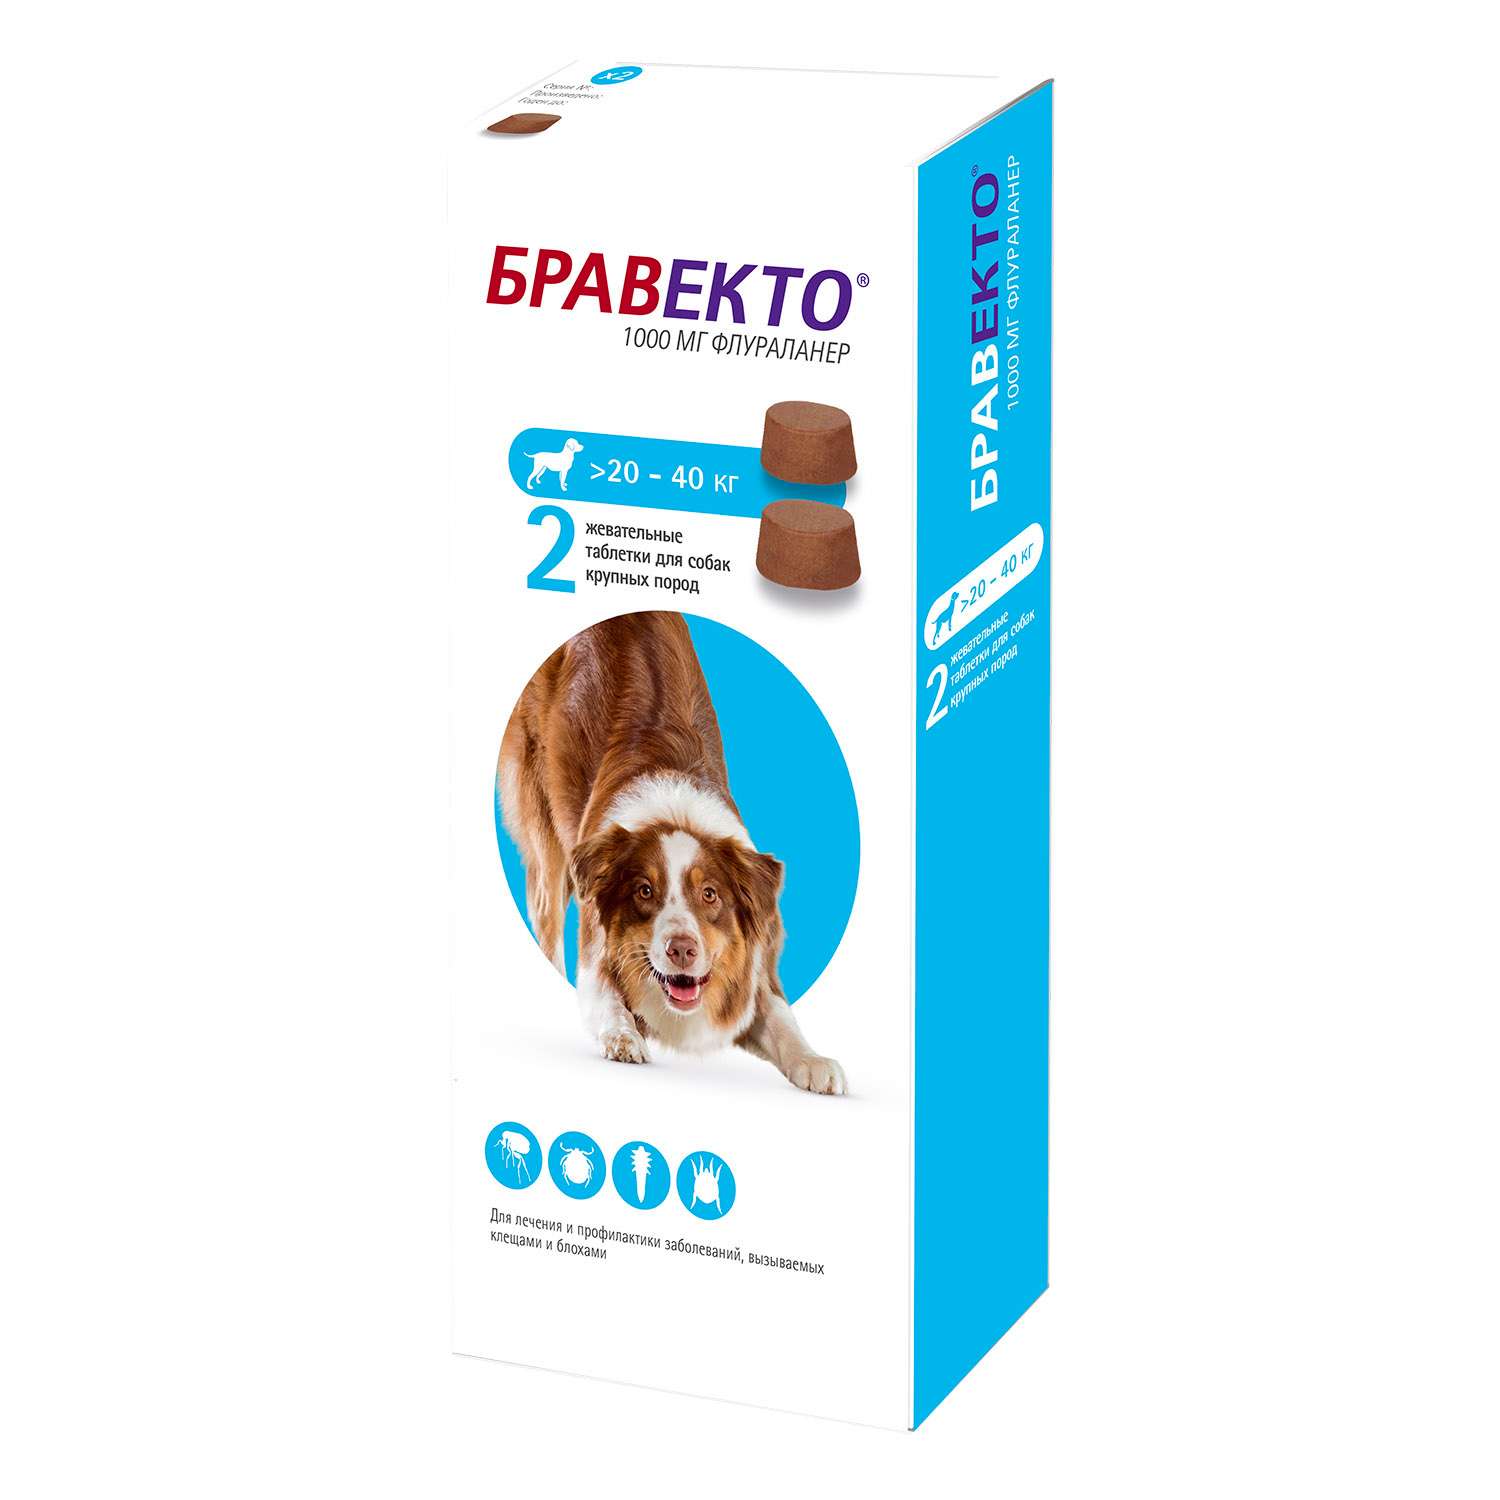 Четыре лапы бравекто. Бравекто для собак 20-40 кг таблетки. Бравекто (Bravecto) 20-40 кг, таблетка 1000 мг. Бравекто 1000 мг. Бравекто спот он д/собак (1400 мг) 40-56 кг (10 уп/бокс).